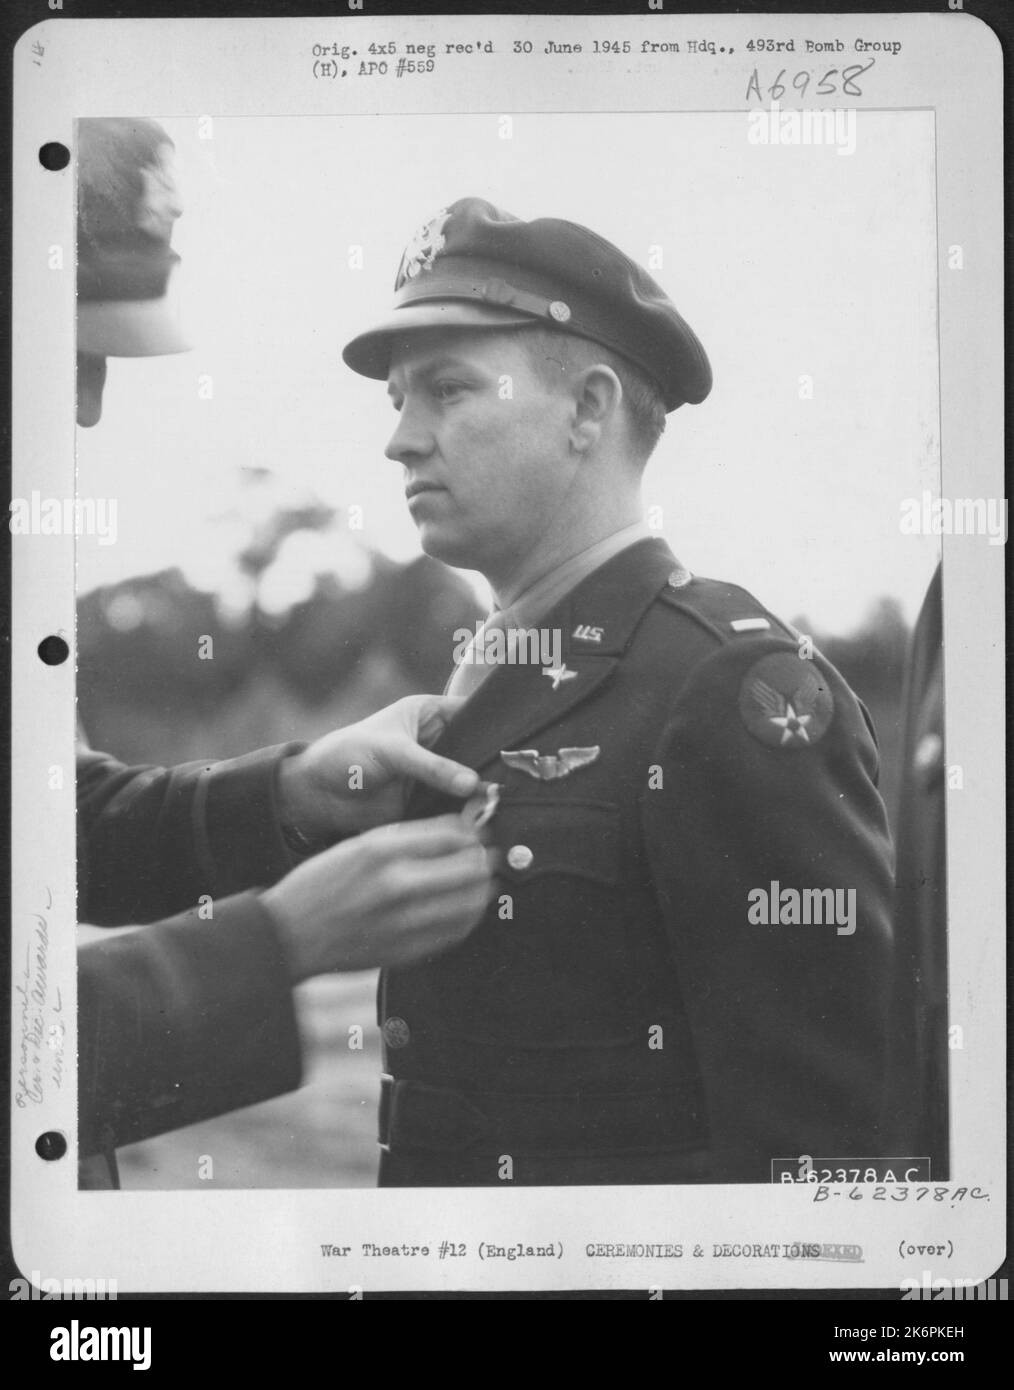 Presentazione della Medaglia al Lt. Tesch del 493Rd Bomb Group, 8th Air Force. Inghilterra, 27 settembre 1944. Foto Stock